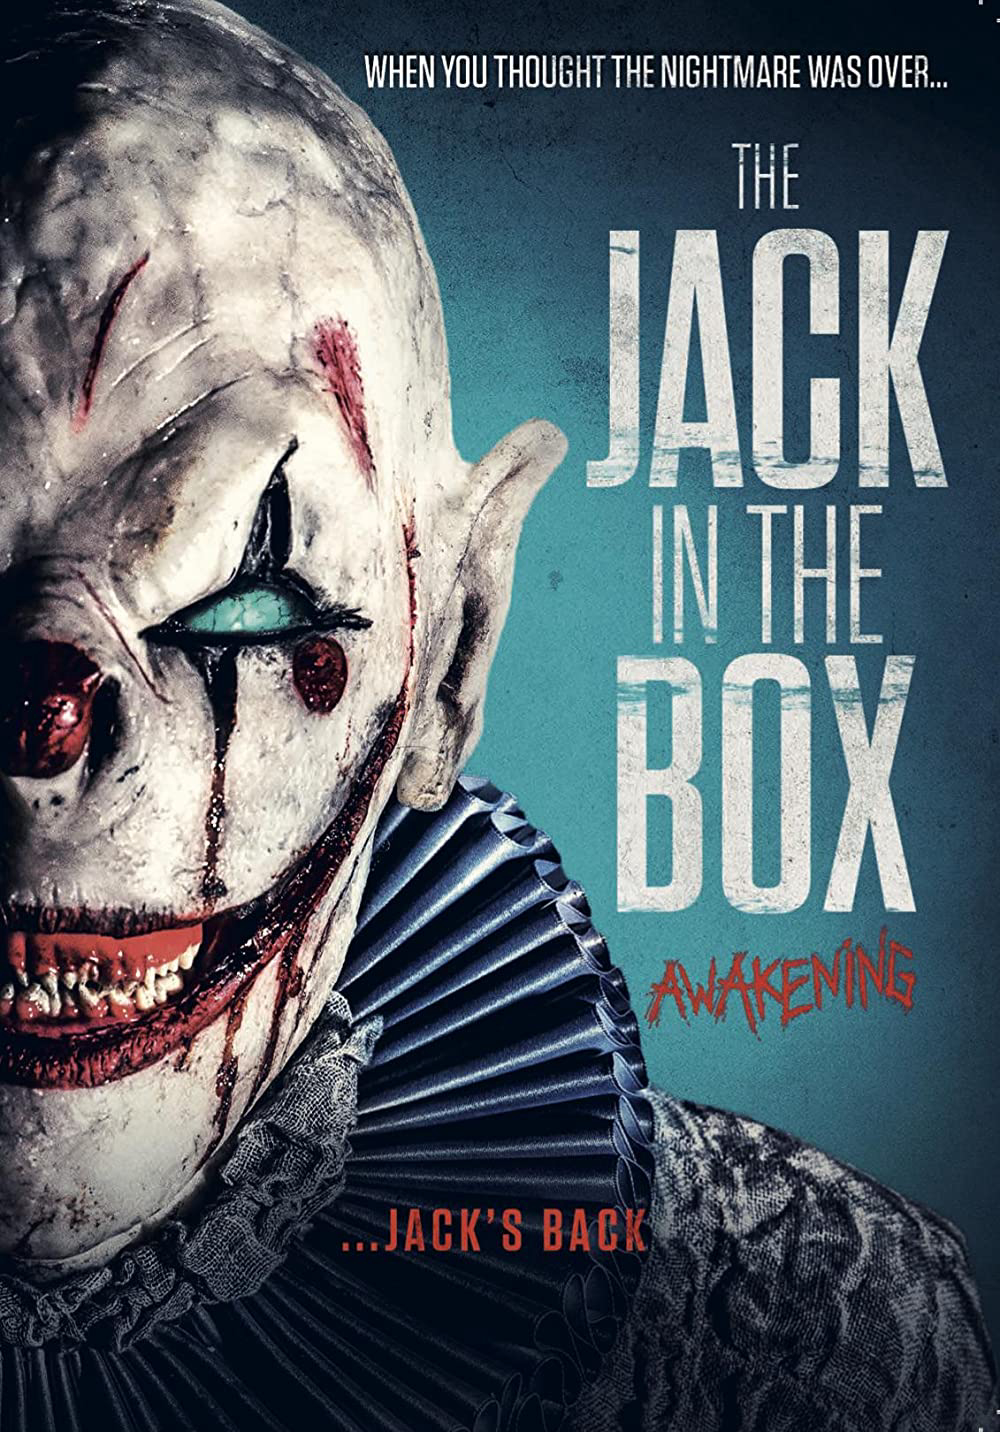 Xem Phim Ma Hề Trong Hộp 2 Thức Tỉnh (The Jack in the Box: Awakening)